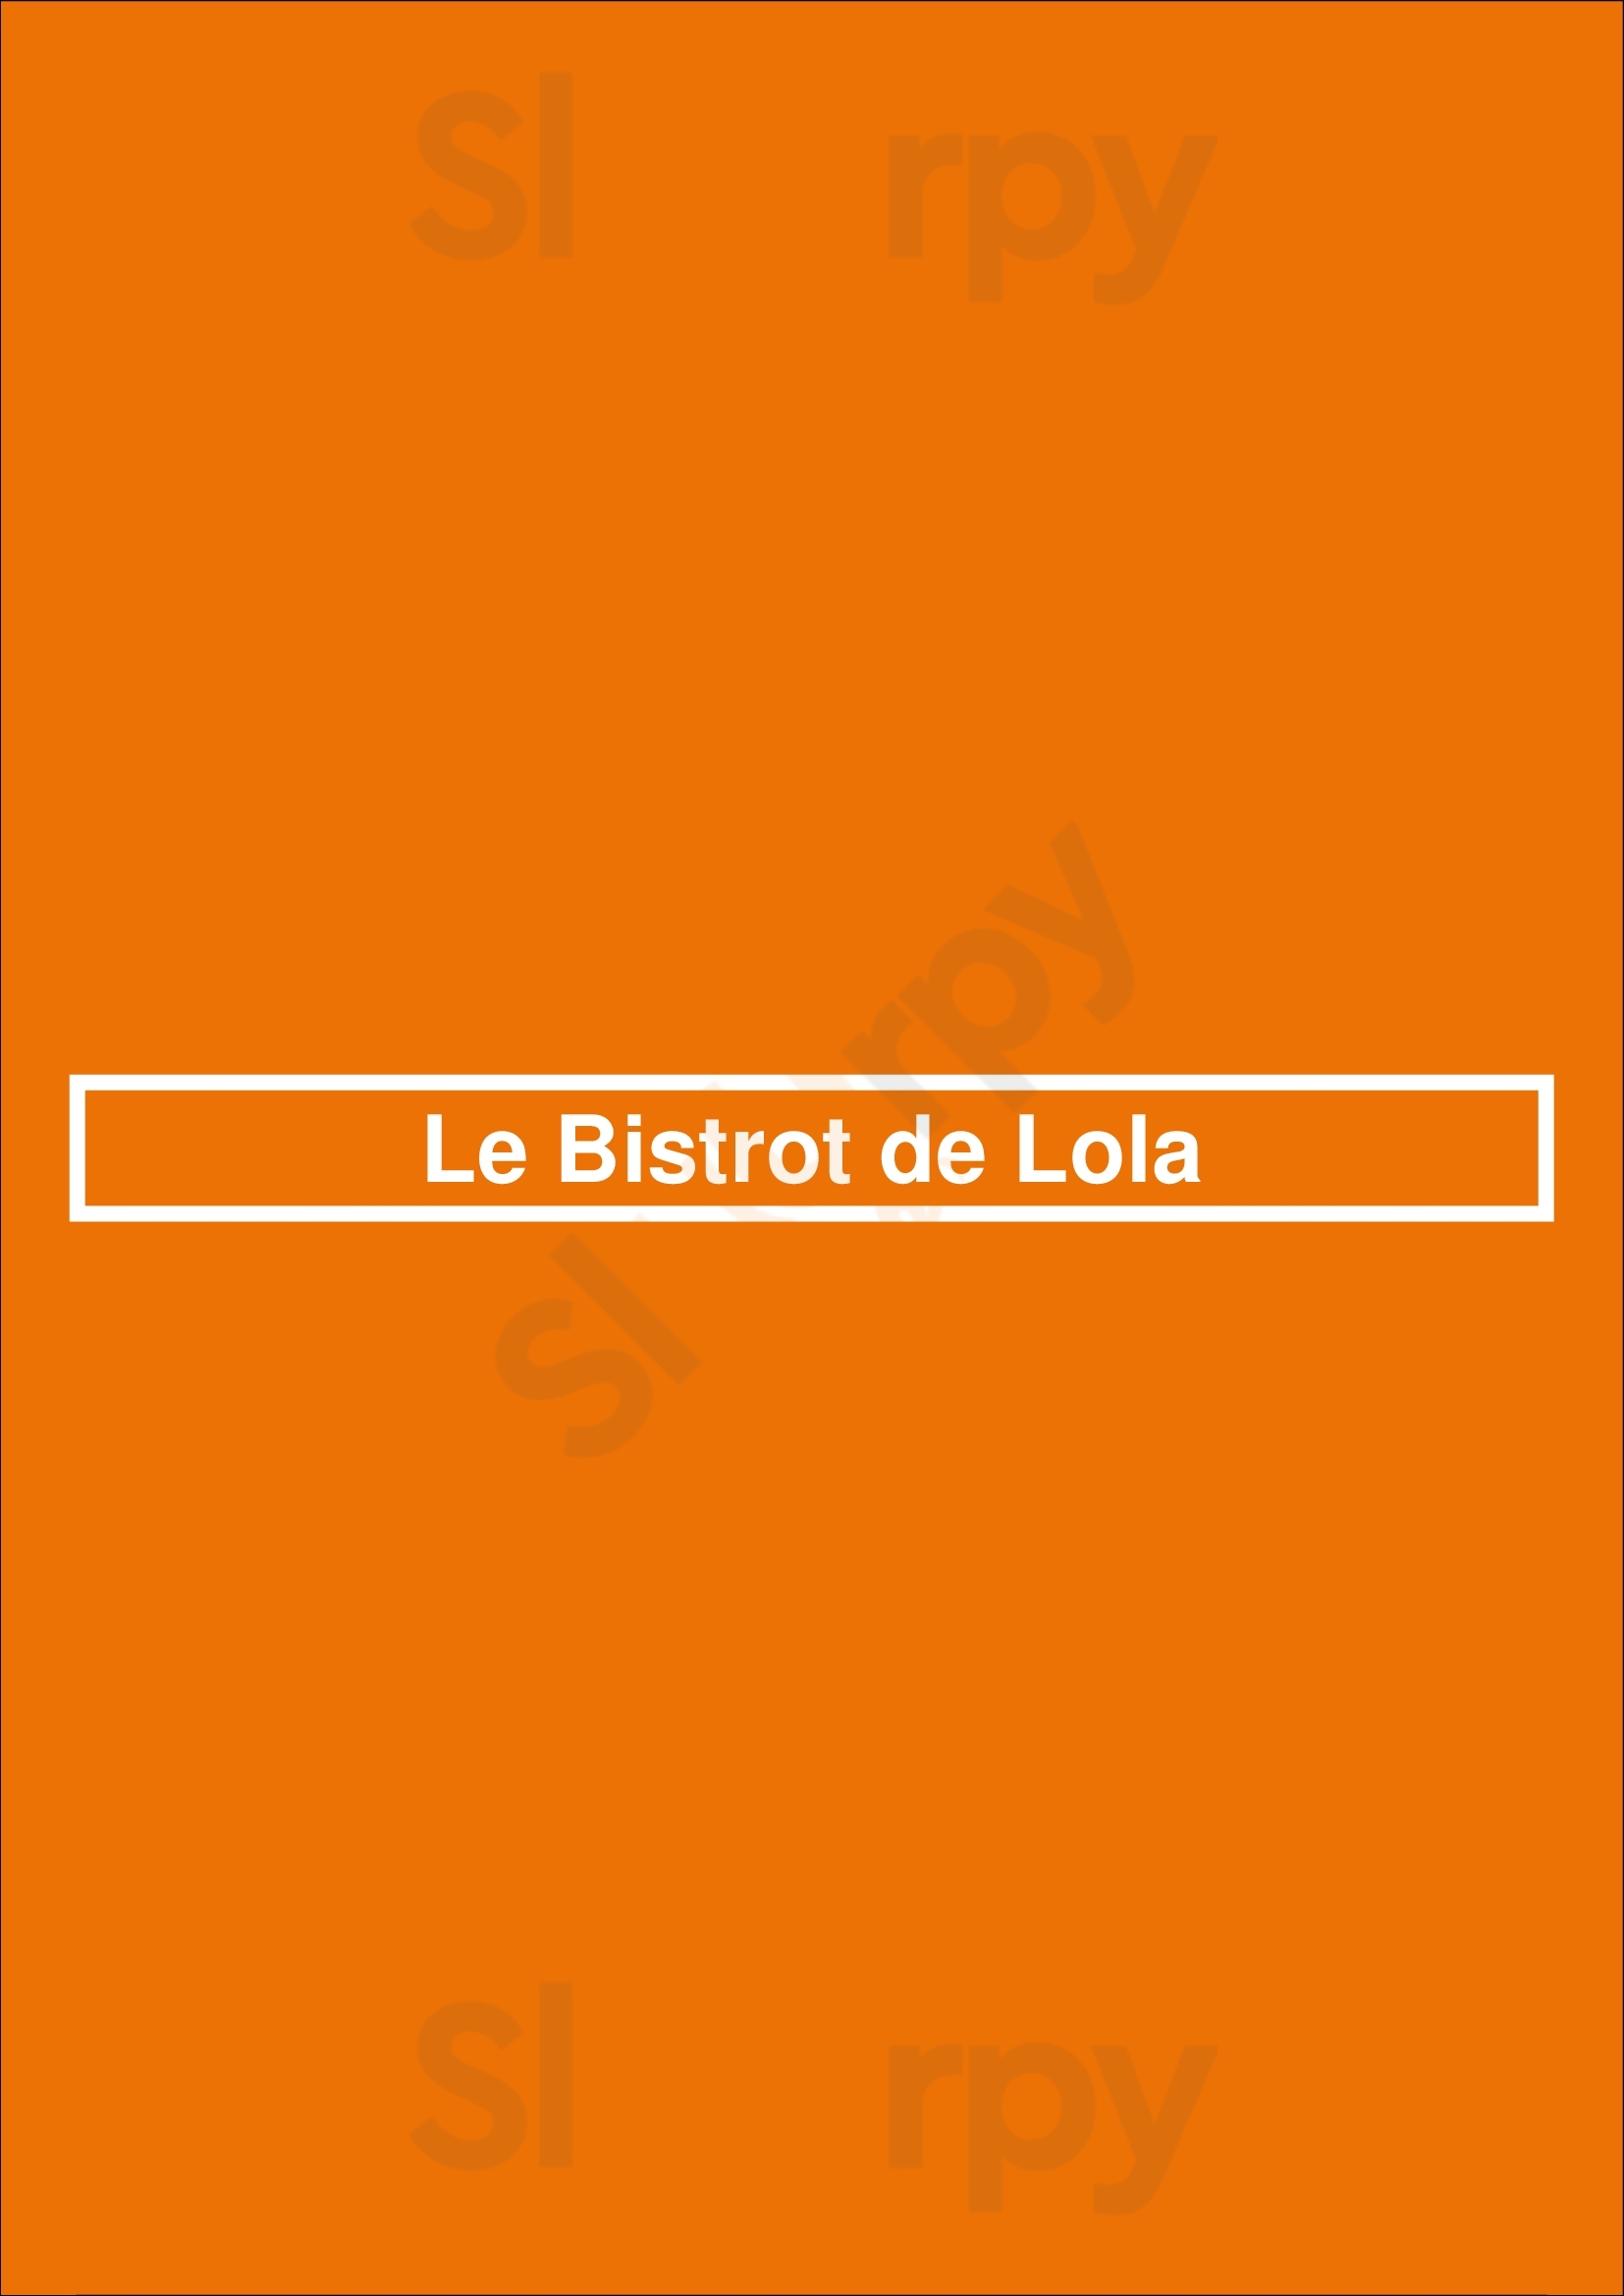 Le Bistrot De Lola Levallois-Perret Menu - 1